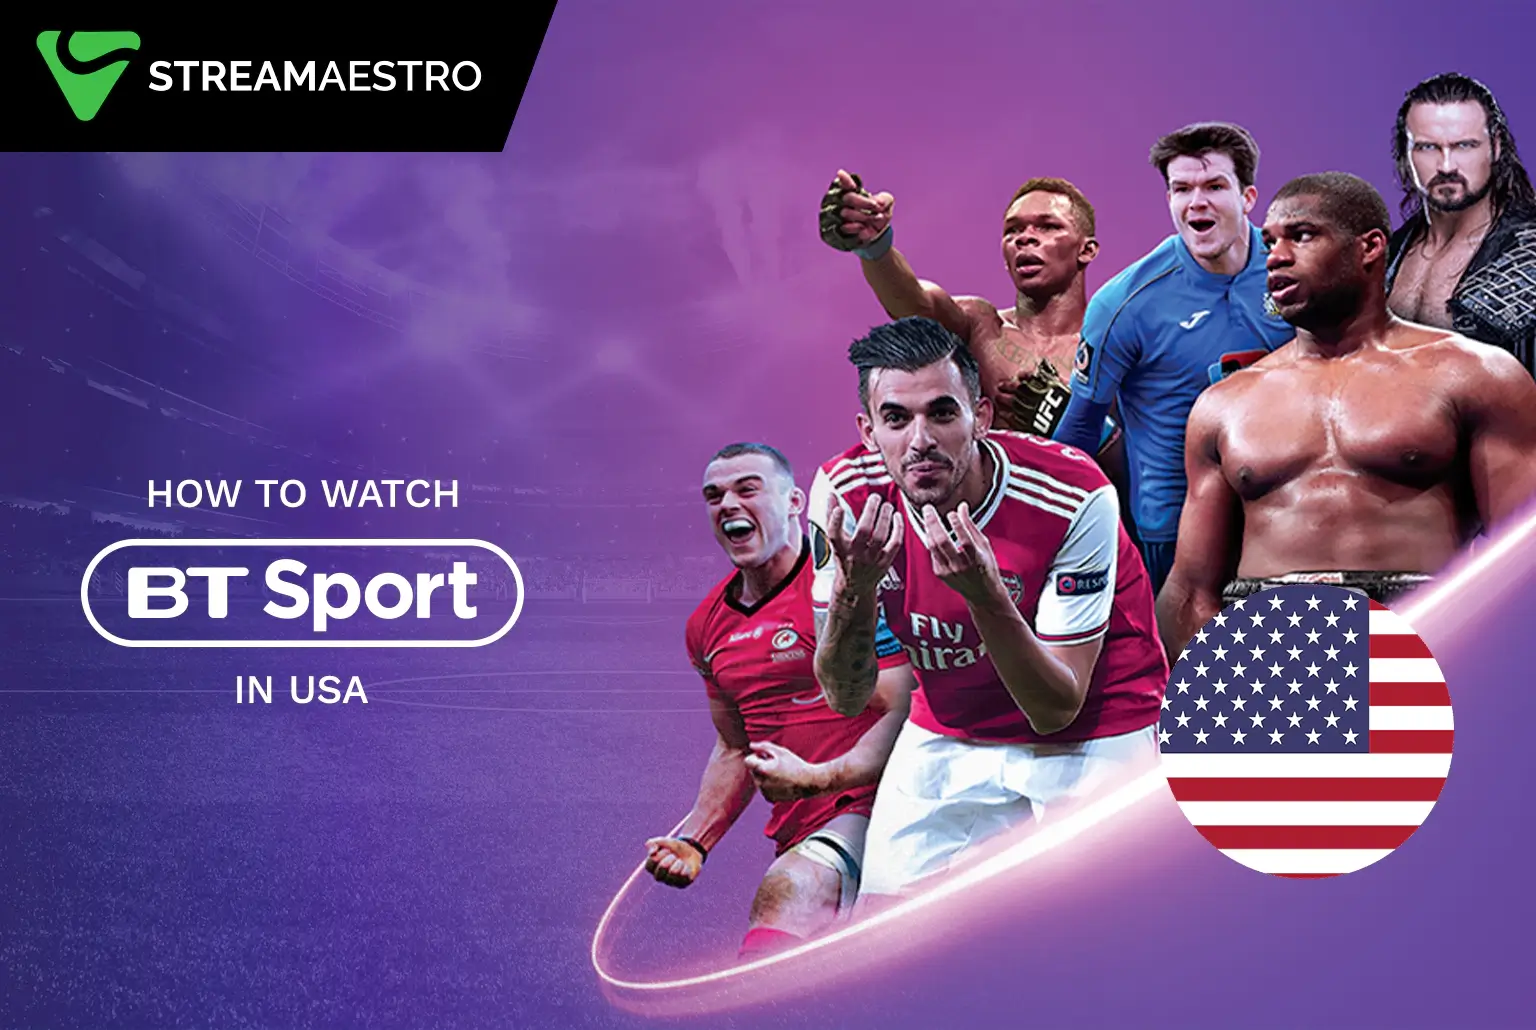 Watch BT Sport in USA